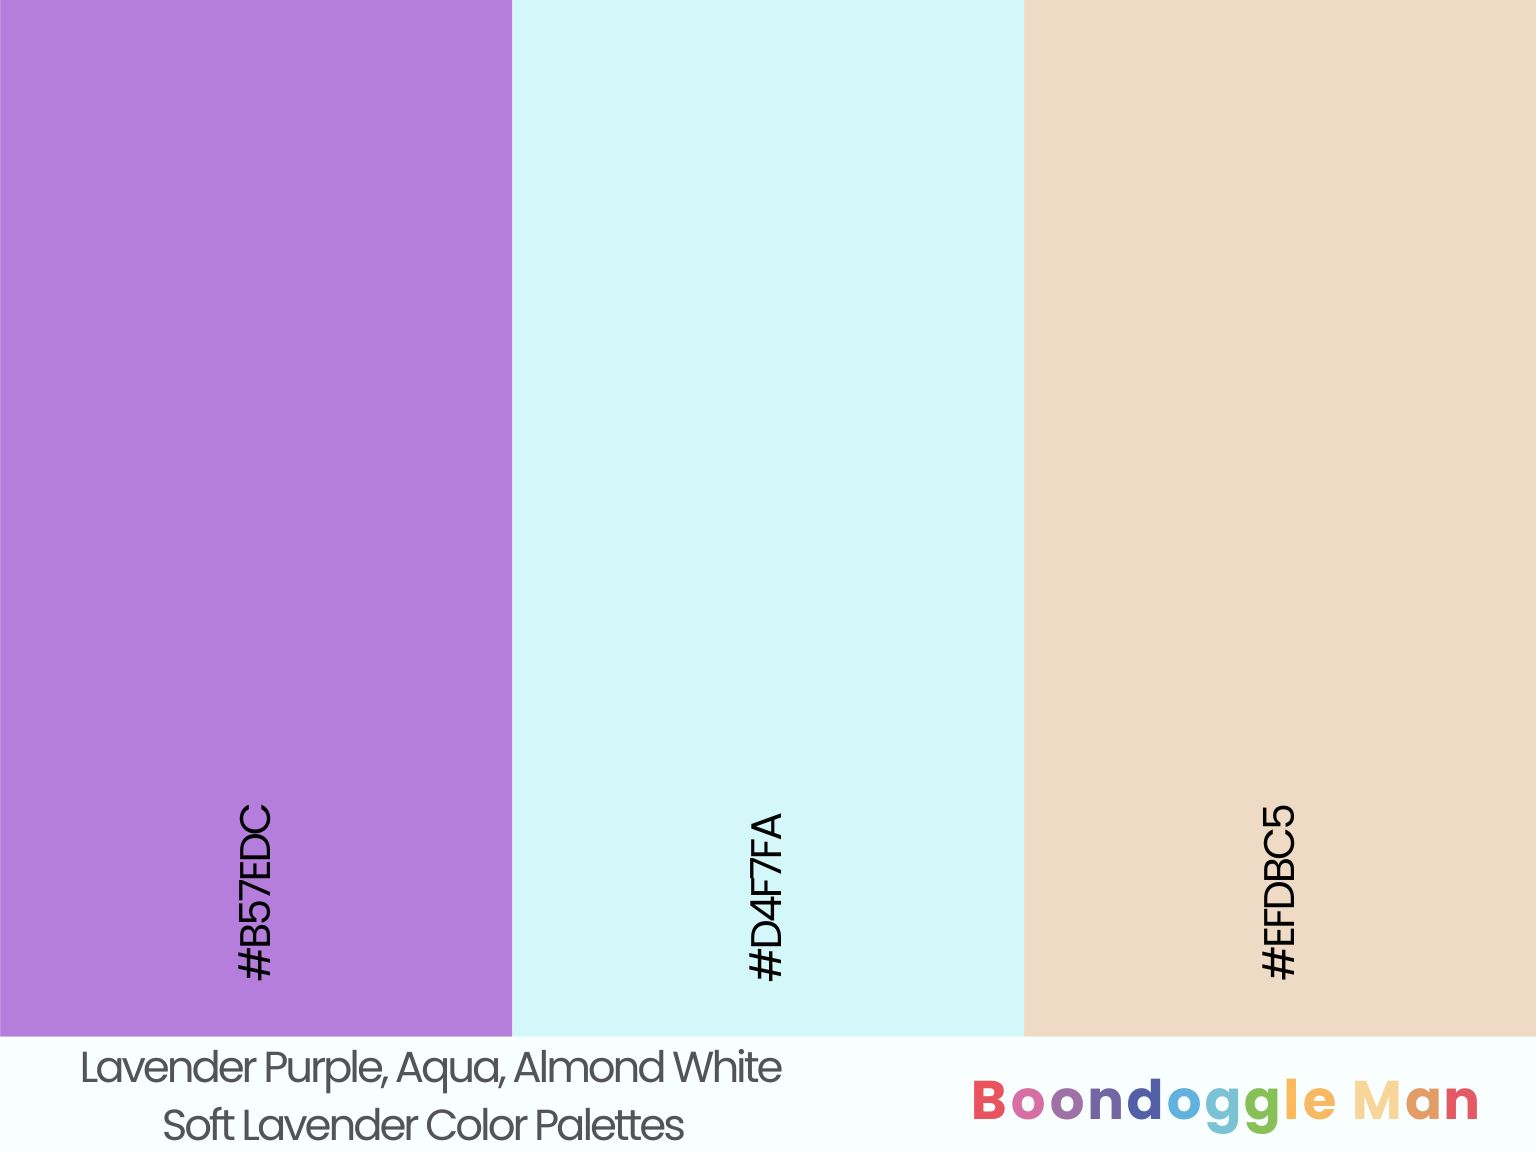 Lavender Purple, Aqua, Almond White